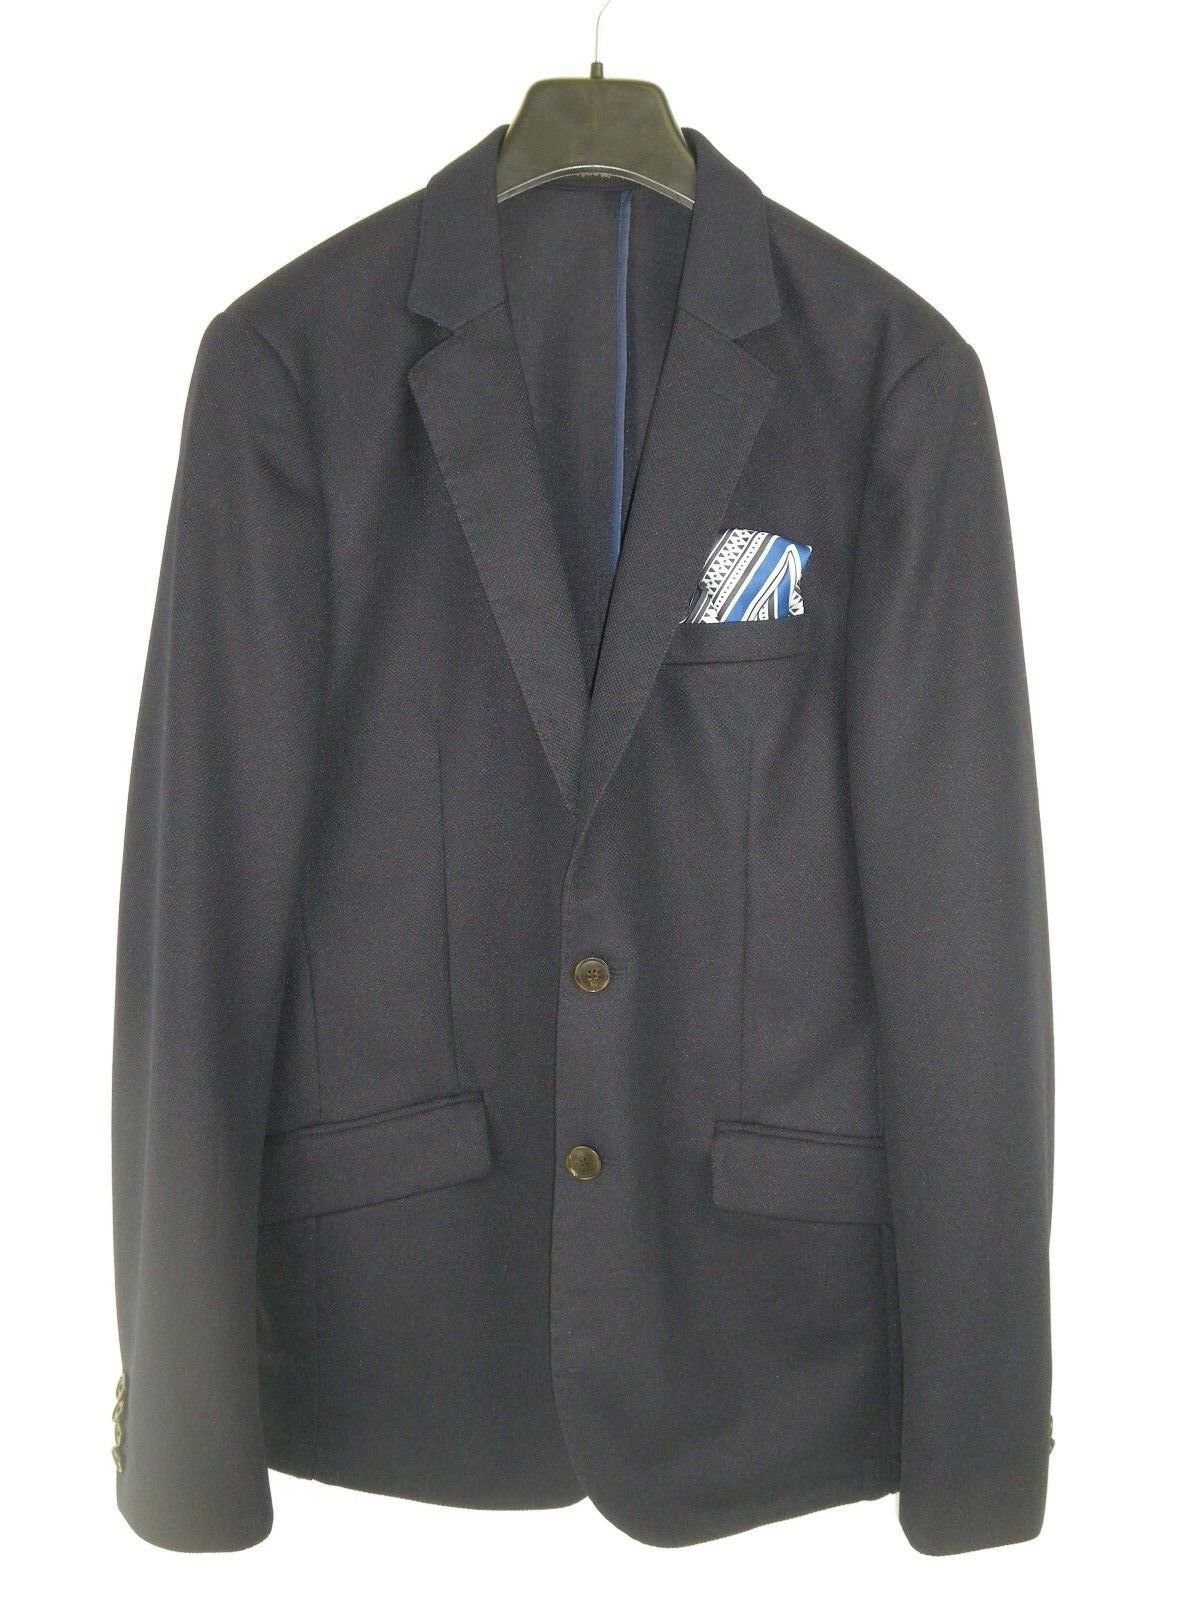 SCOTCH & SODA Amsterdam Herren Sakko Jacke Jacket Größe 50 L Blau Einstecktuch 